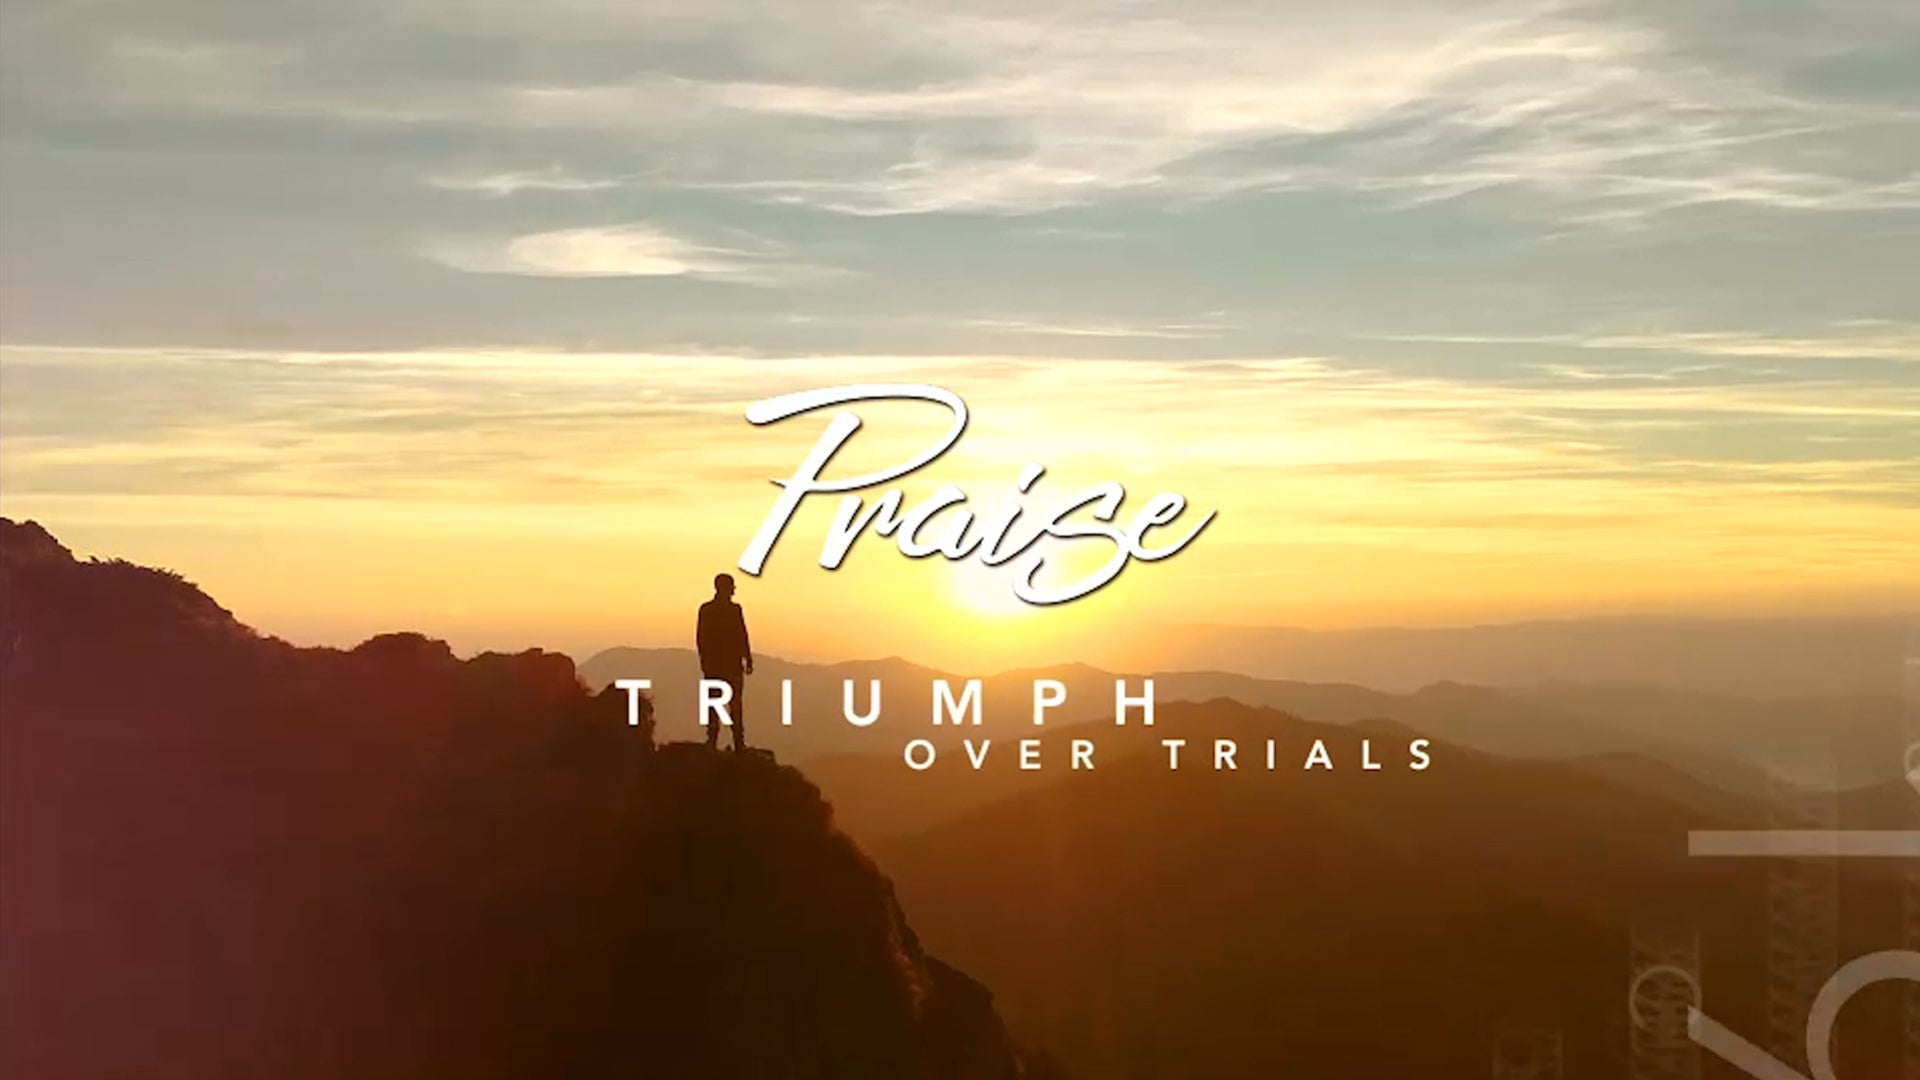 Triumph Over Trials on TBN